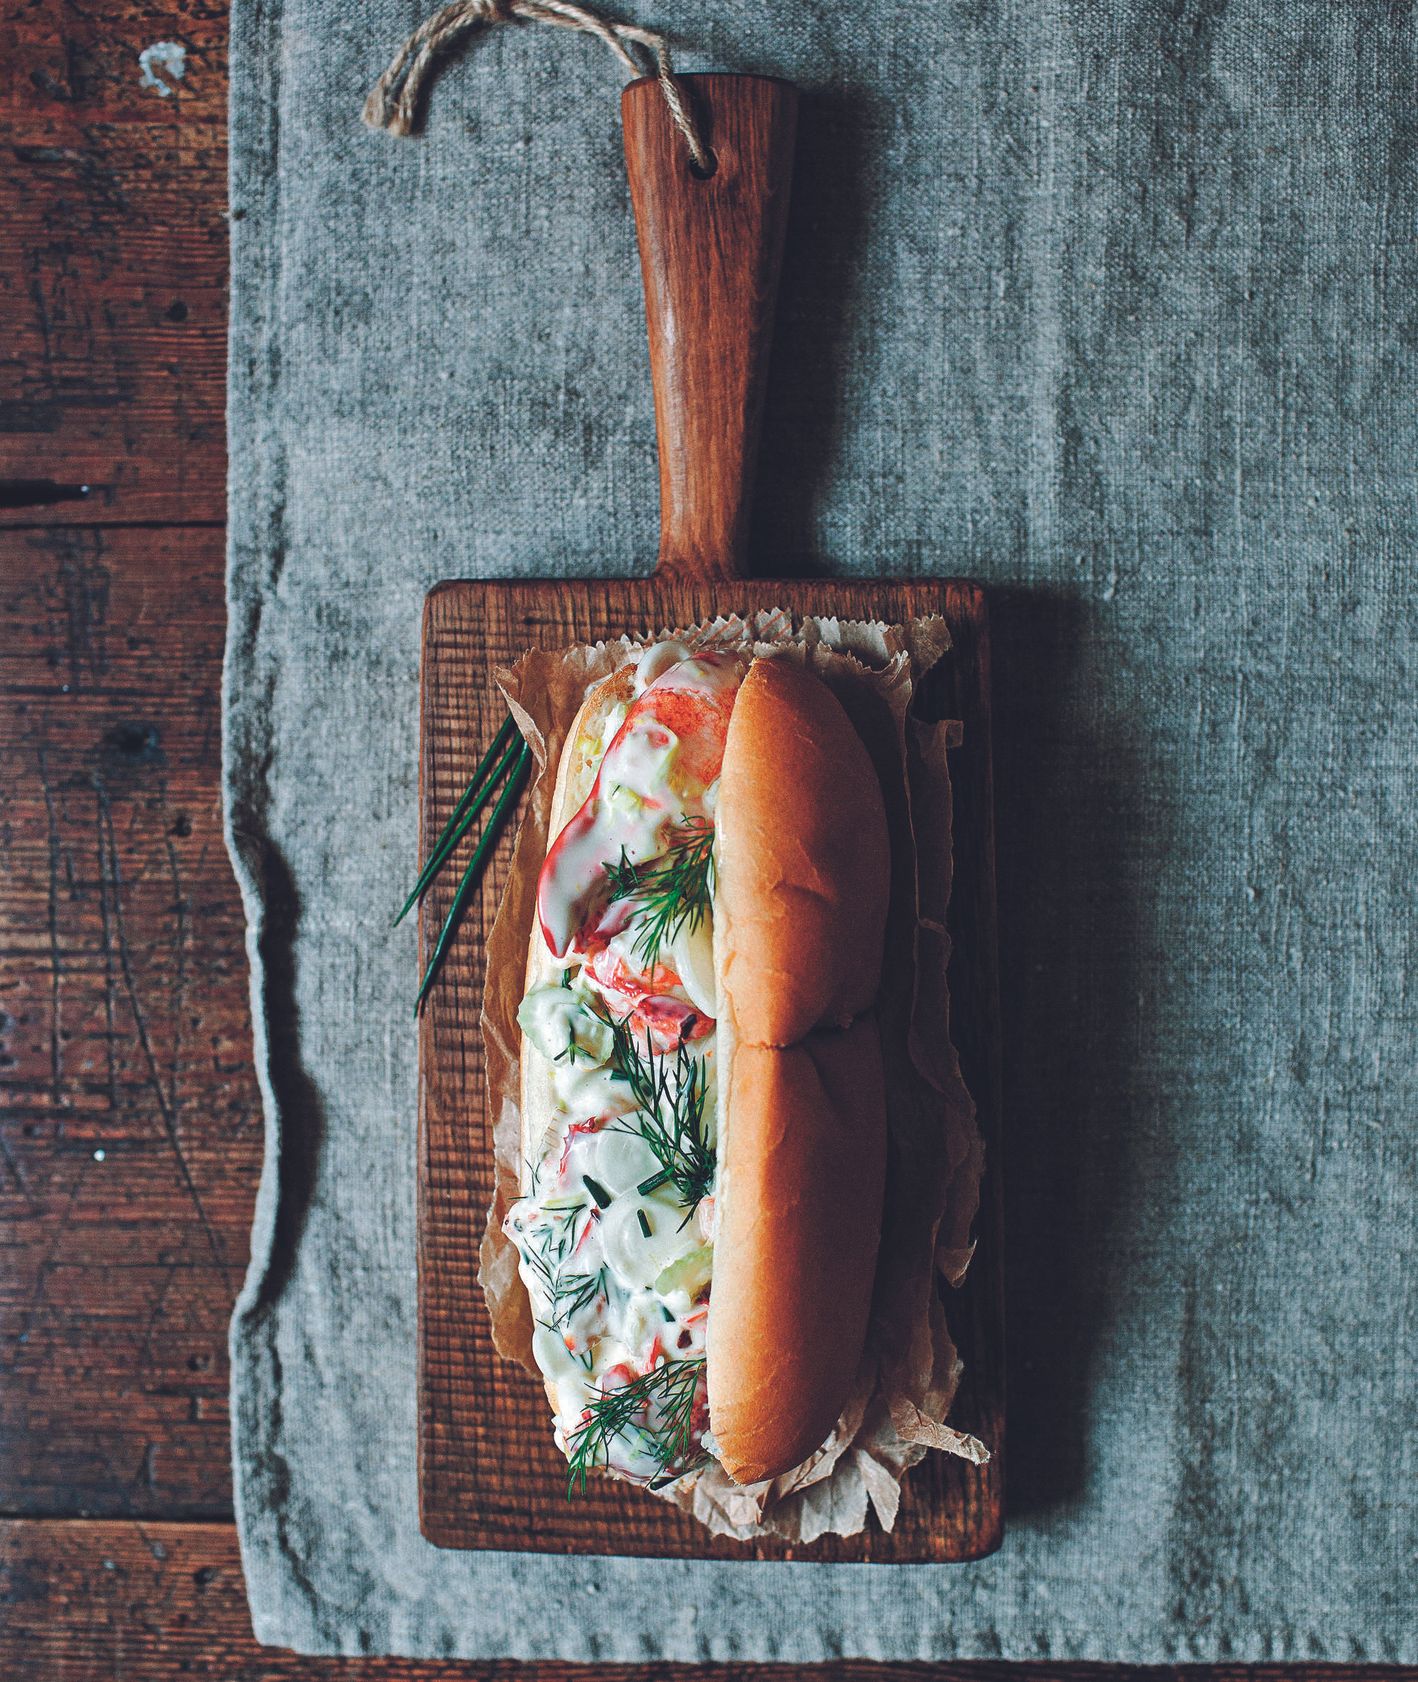 Klasyczna angielska kanapka z homarem. Miękka smaczna bułka i świeży słodki homar (fot. Marta Greber)